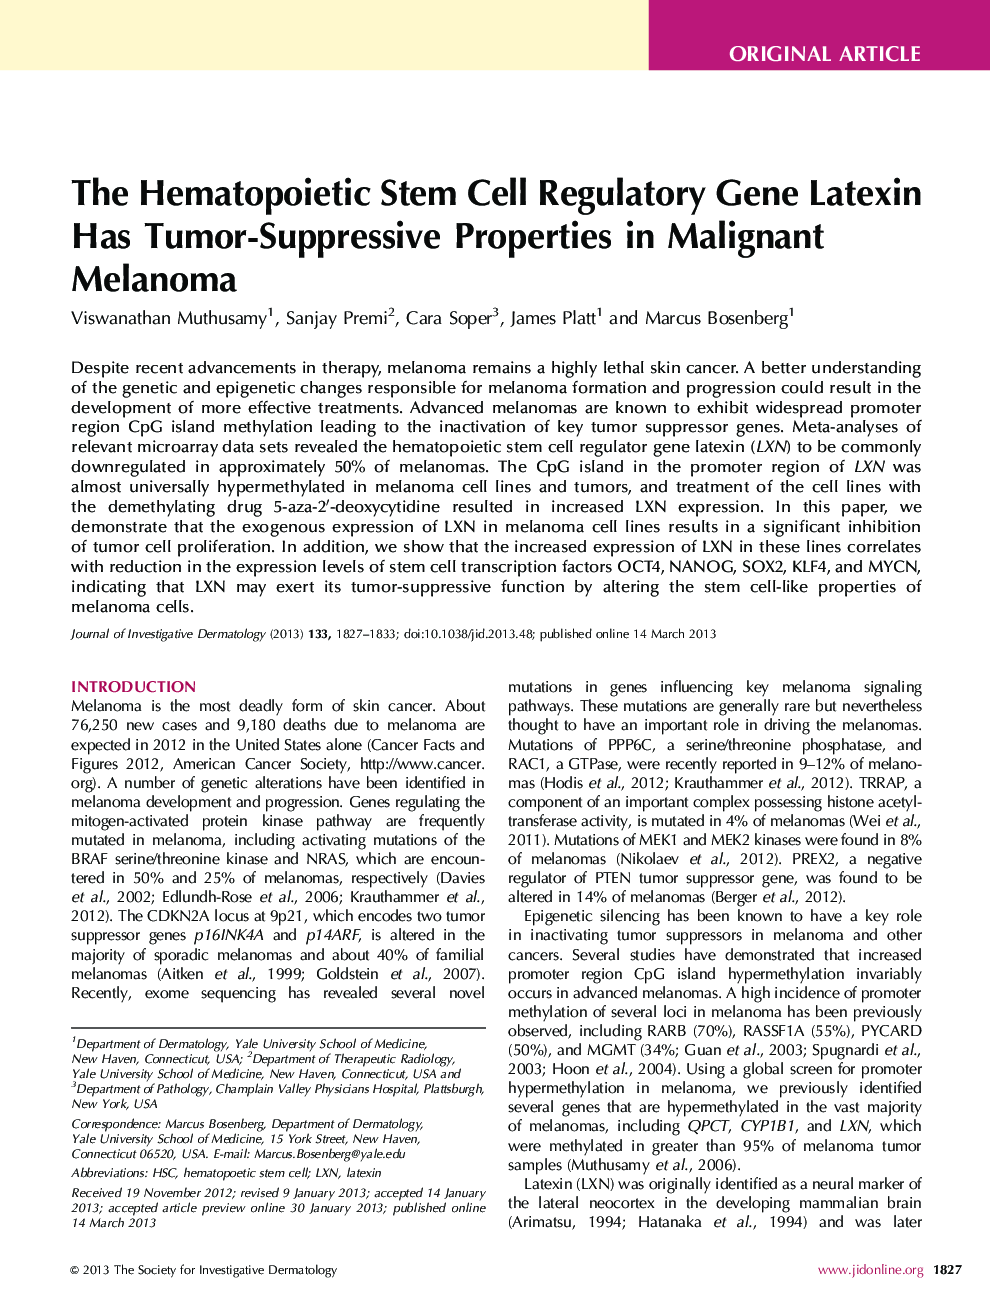 لاتکسین ژن تنظیم کننده سلول های بنیادی هماتوپوئیدی دارای خواص سرطانی تومور در ملانوم بدخیم است 